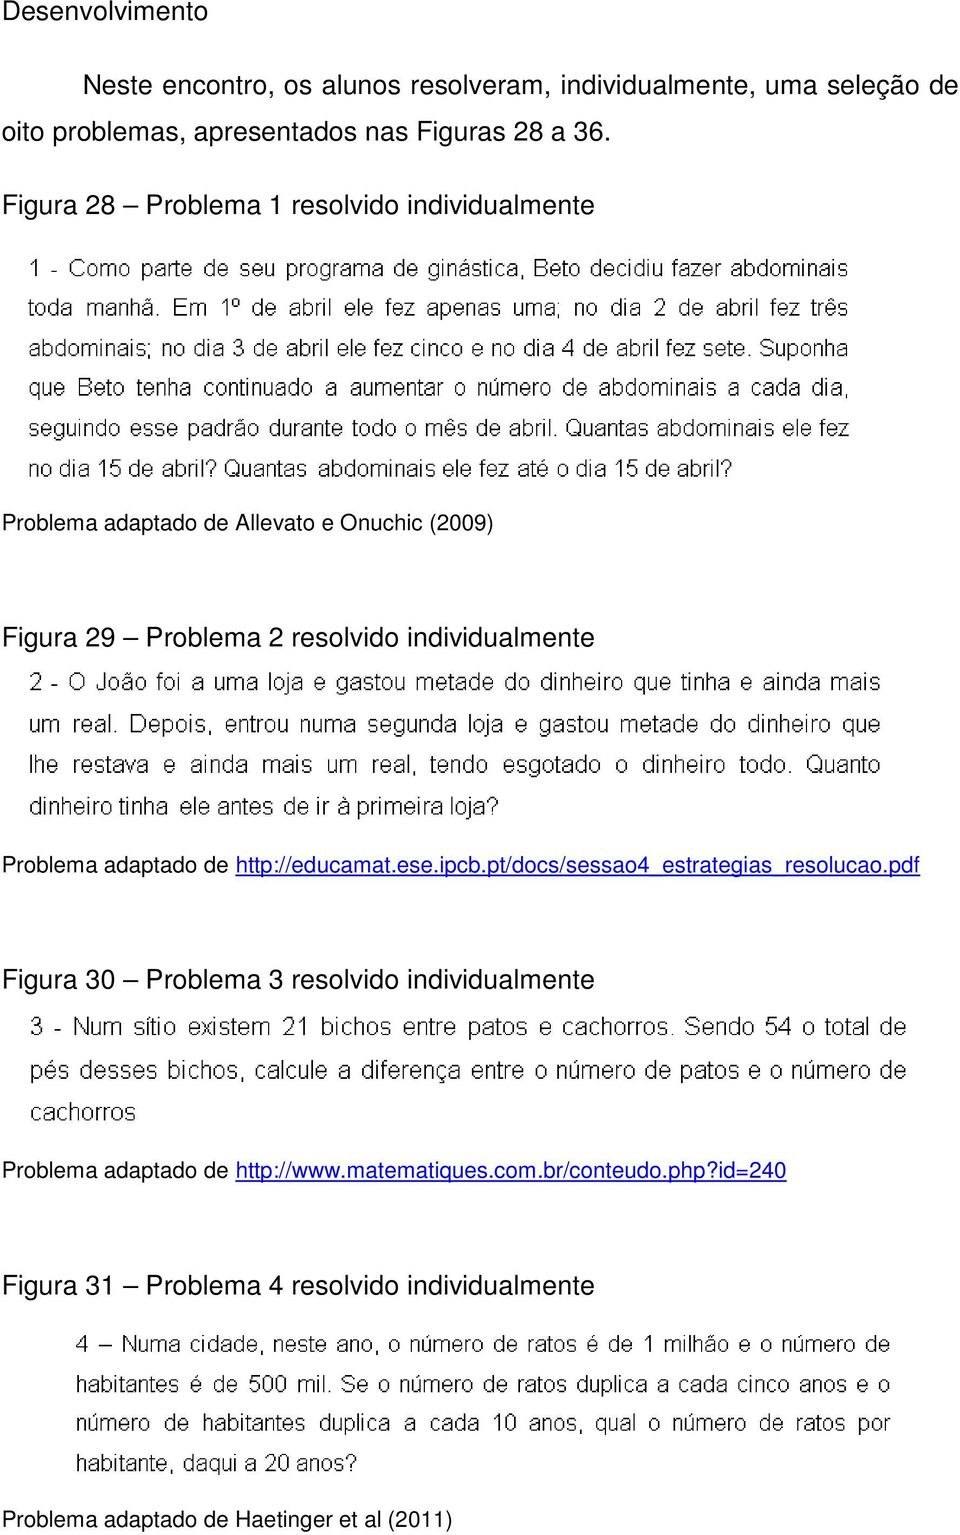 Problema adaptado de http://educamat.ese.ipcb.pt/docs/sessao4_estrategias_resolucao.